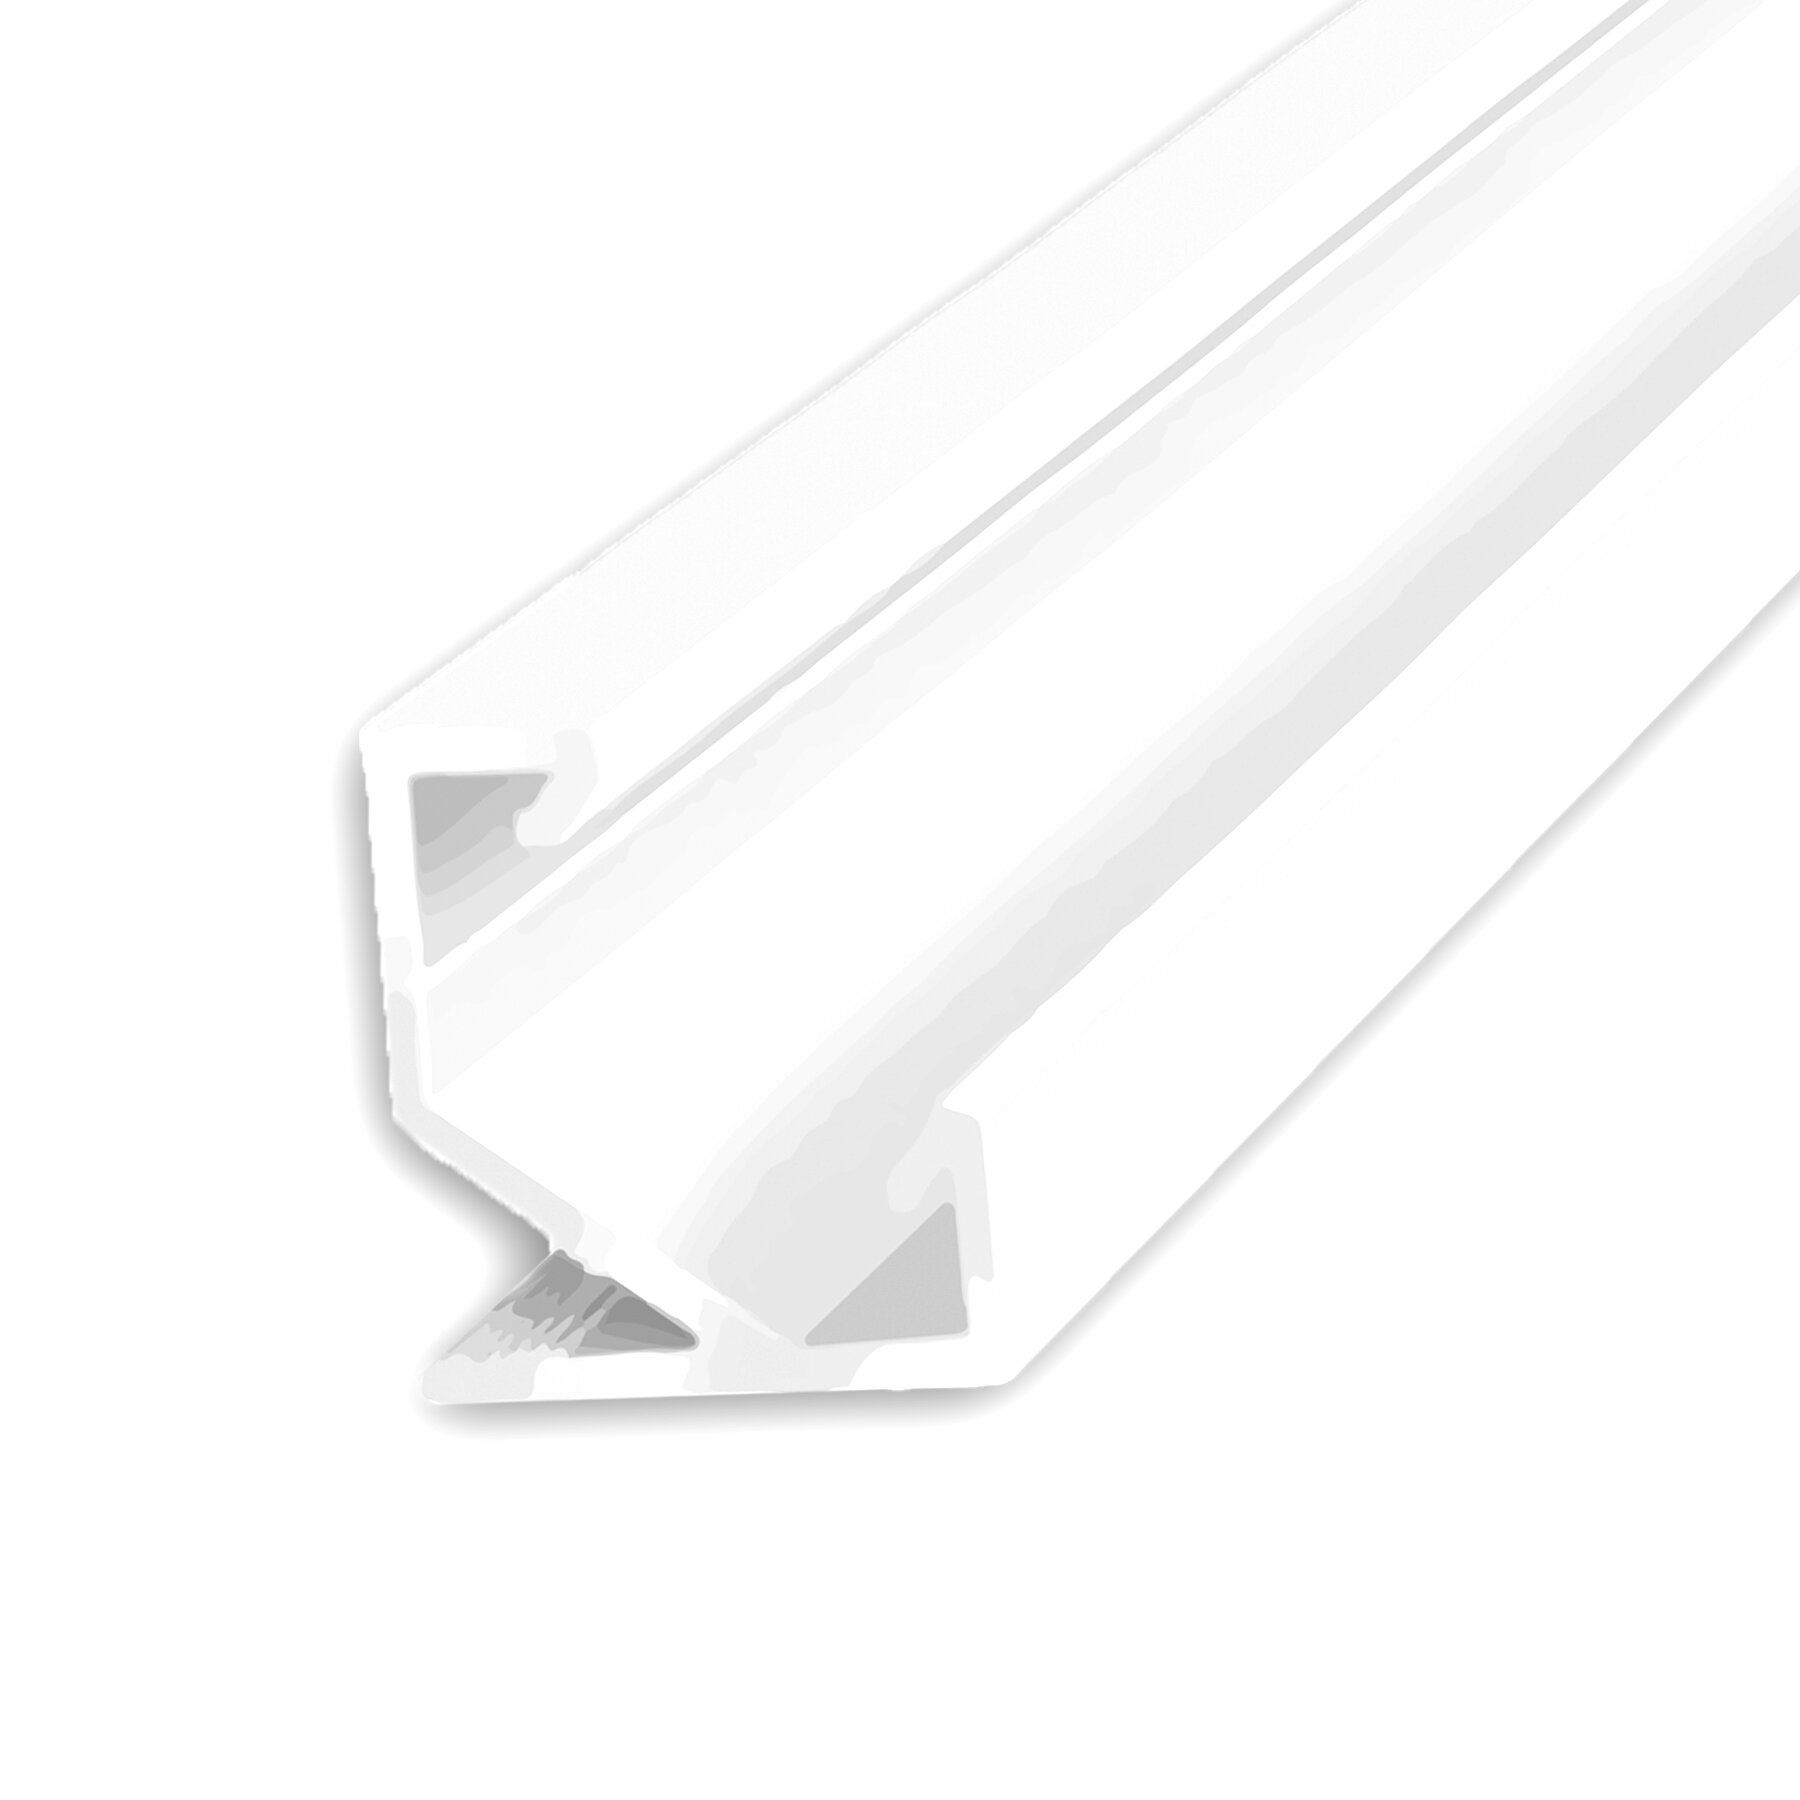 Профиль лпу17 для светодиодной ленты ЛПУ 17. Алюминиевый профиль для светодиодной ленты угловой ЛПУ-17. Профиль угловой белый. Luminor профиль врезной b304, белый матовый, 13.6х7мм.